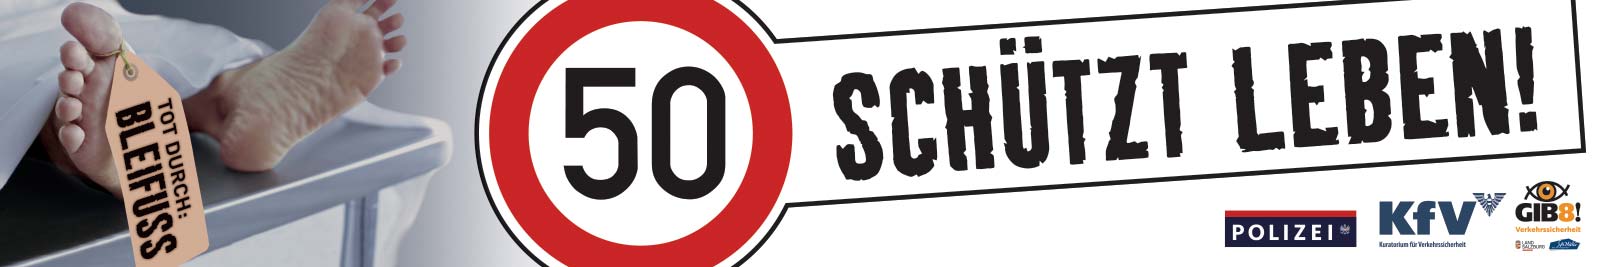 Verkehrssicherheitskampagne des Landes Salzburg 2010: Banner "50 schützt Leben"